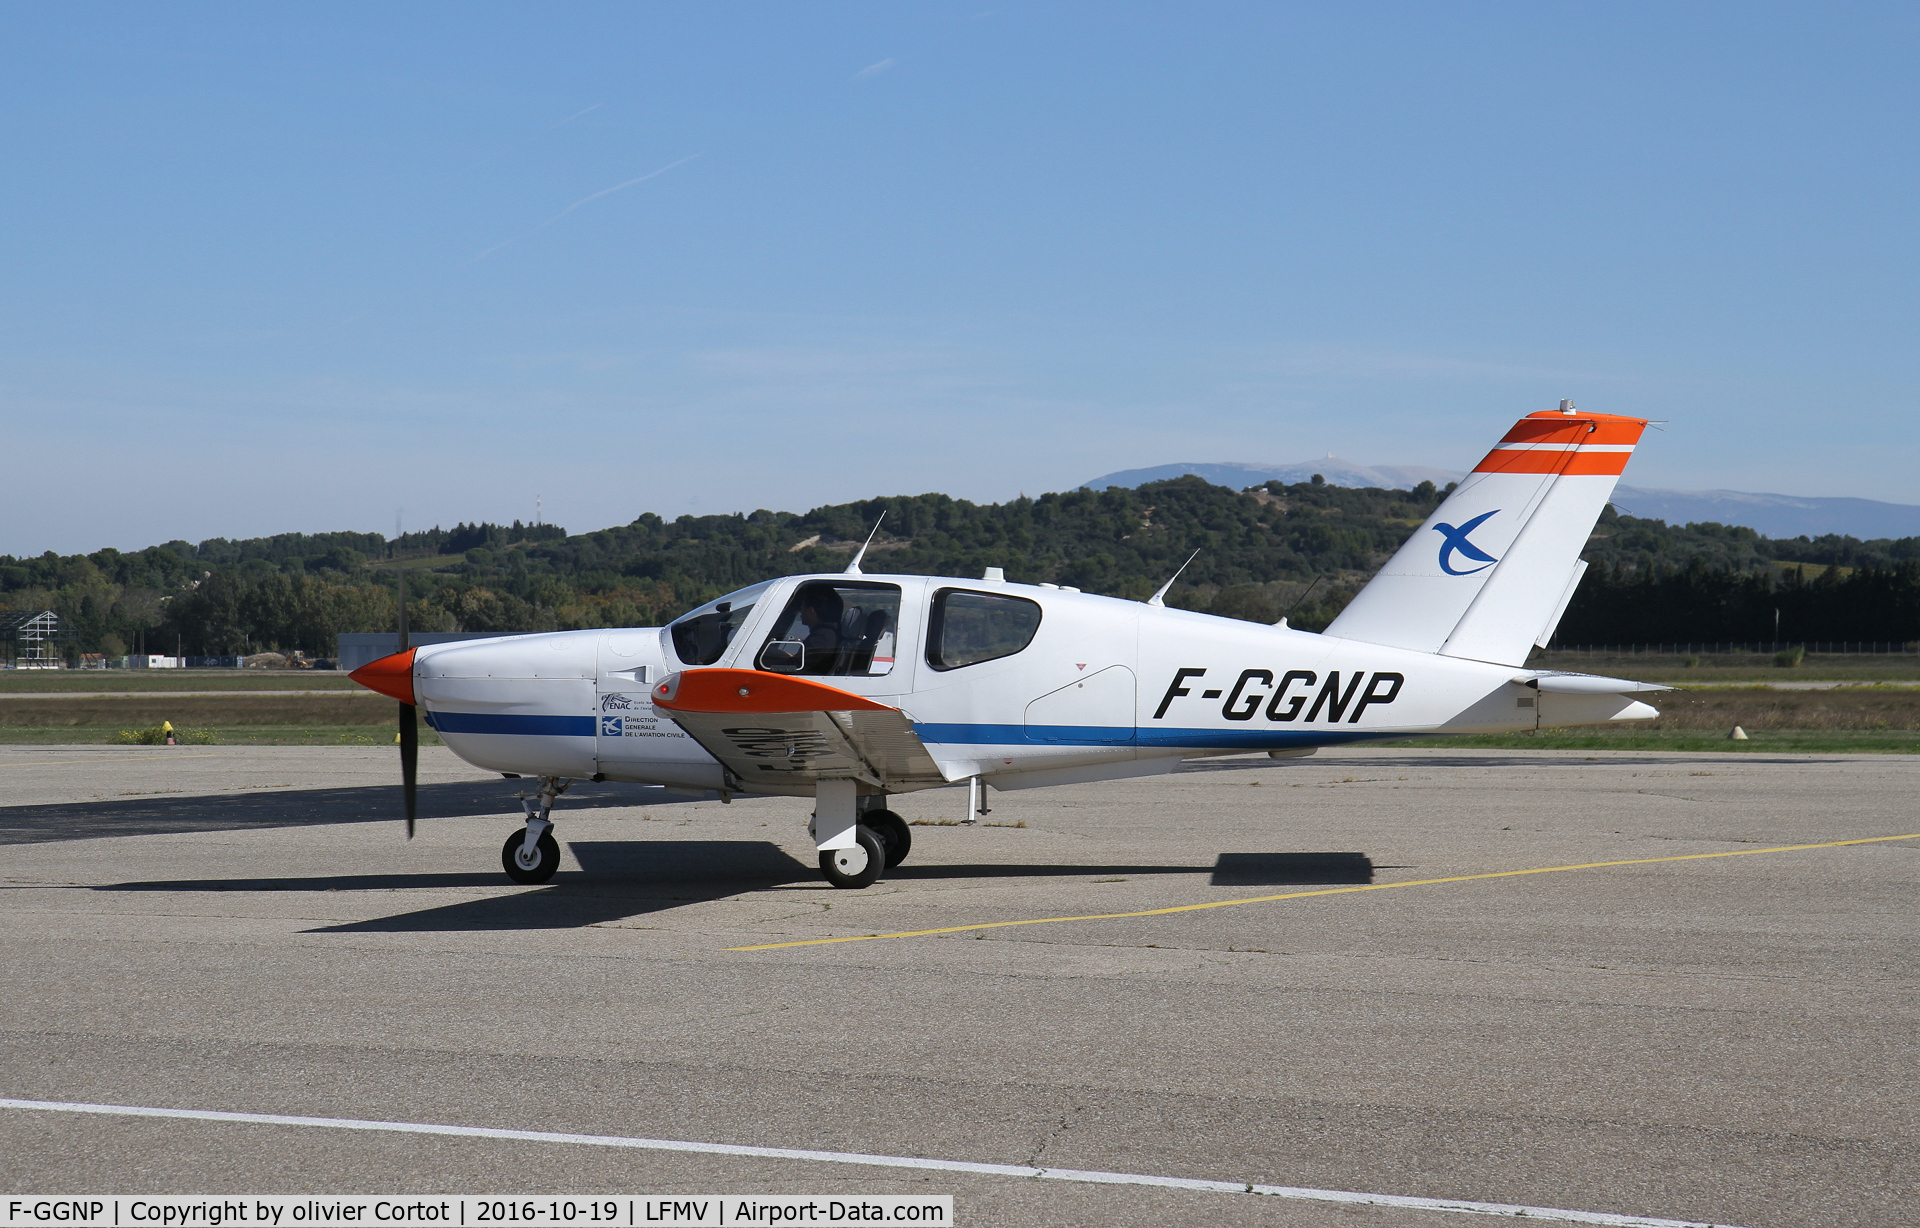 F-GGNP, Socata TB-20 C/N 1264, taxiing at Avignon airport